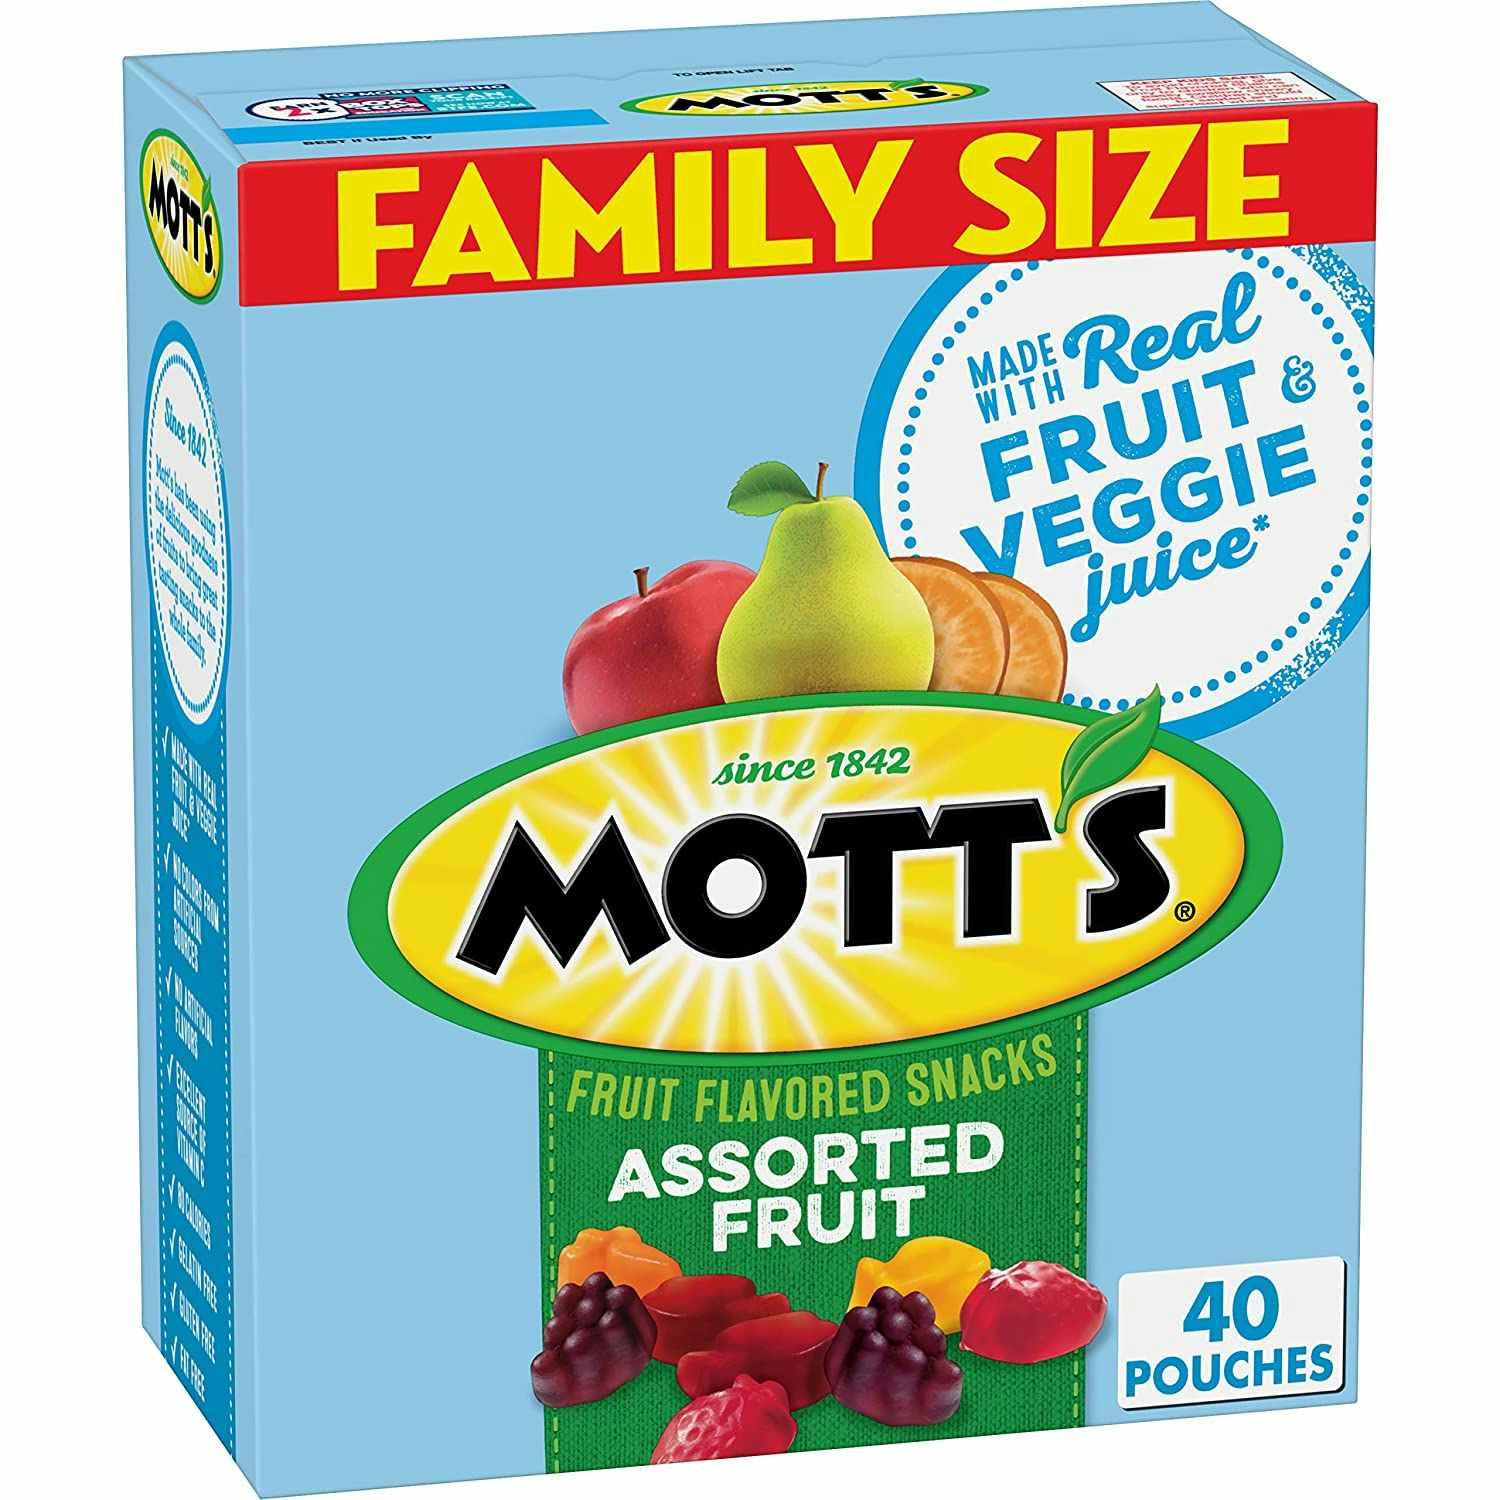 A box of Mott's family size fruit snacks.